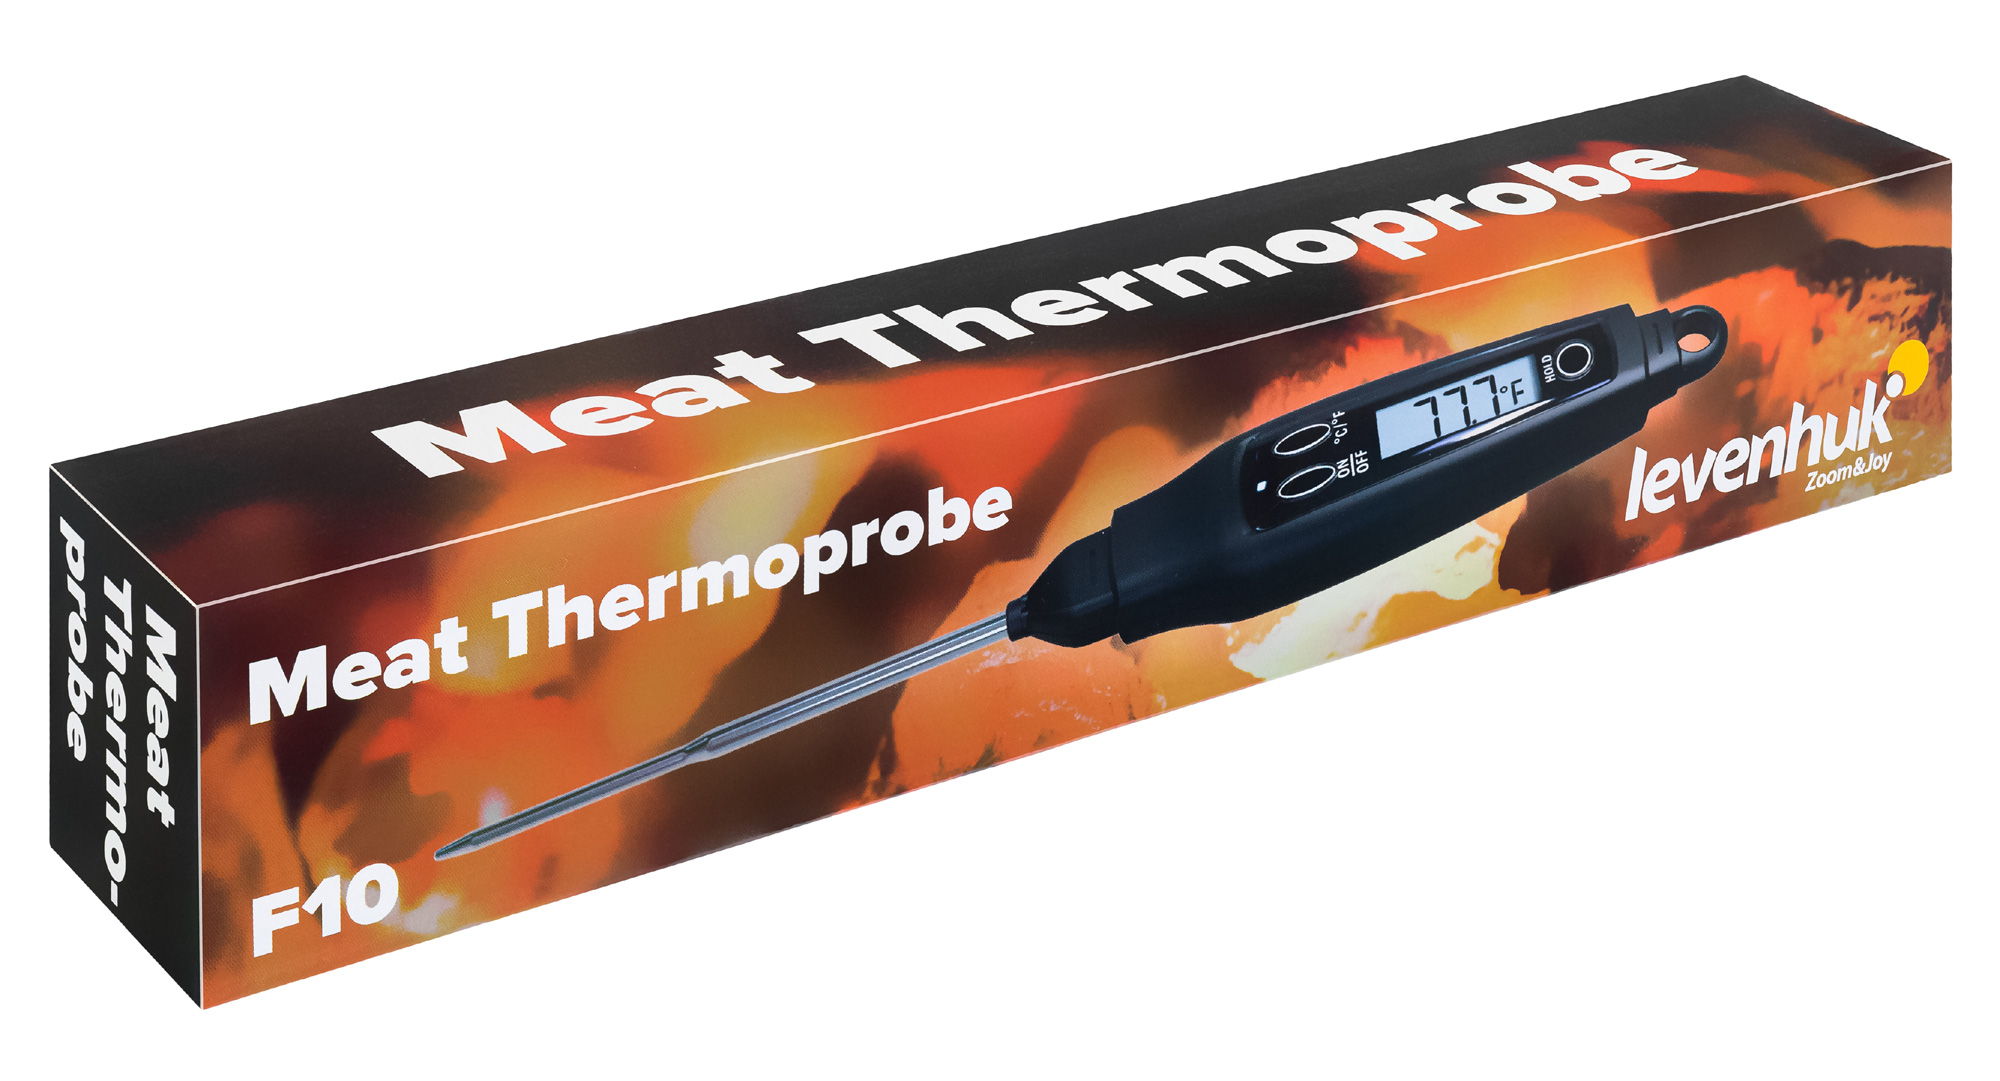 Термощуп кулинарный Levenhuk F10 Прибор для контроля температуры мяса, выпечки и других продуктов в процессе приготовления